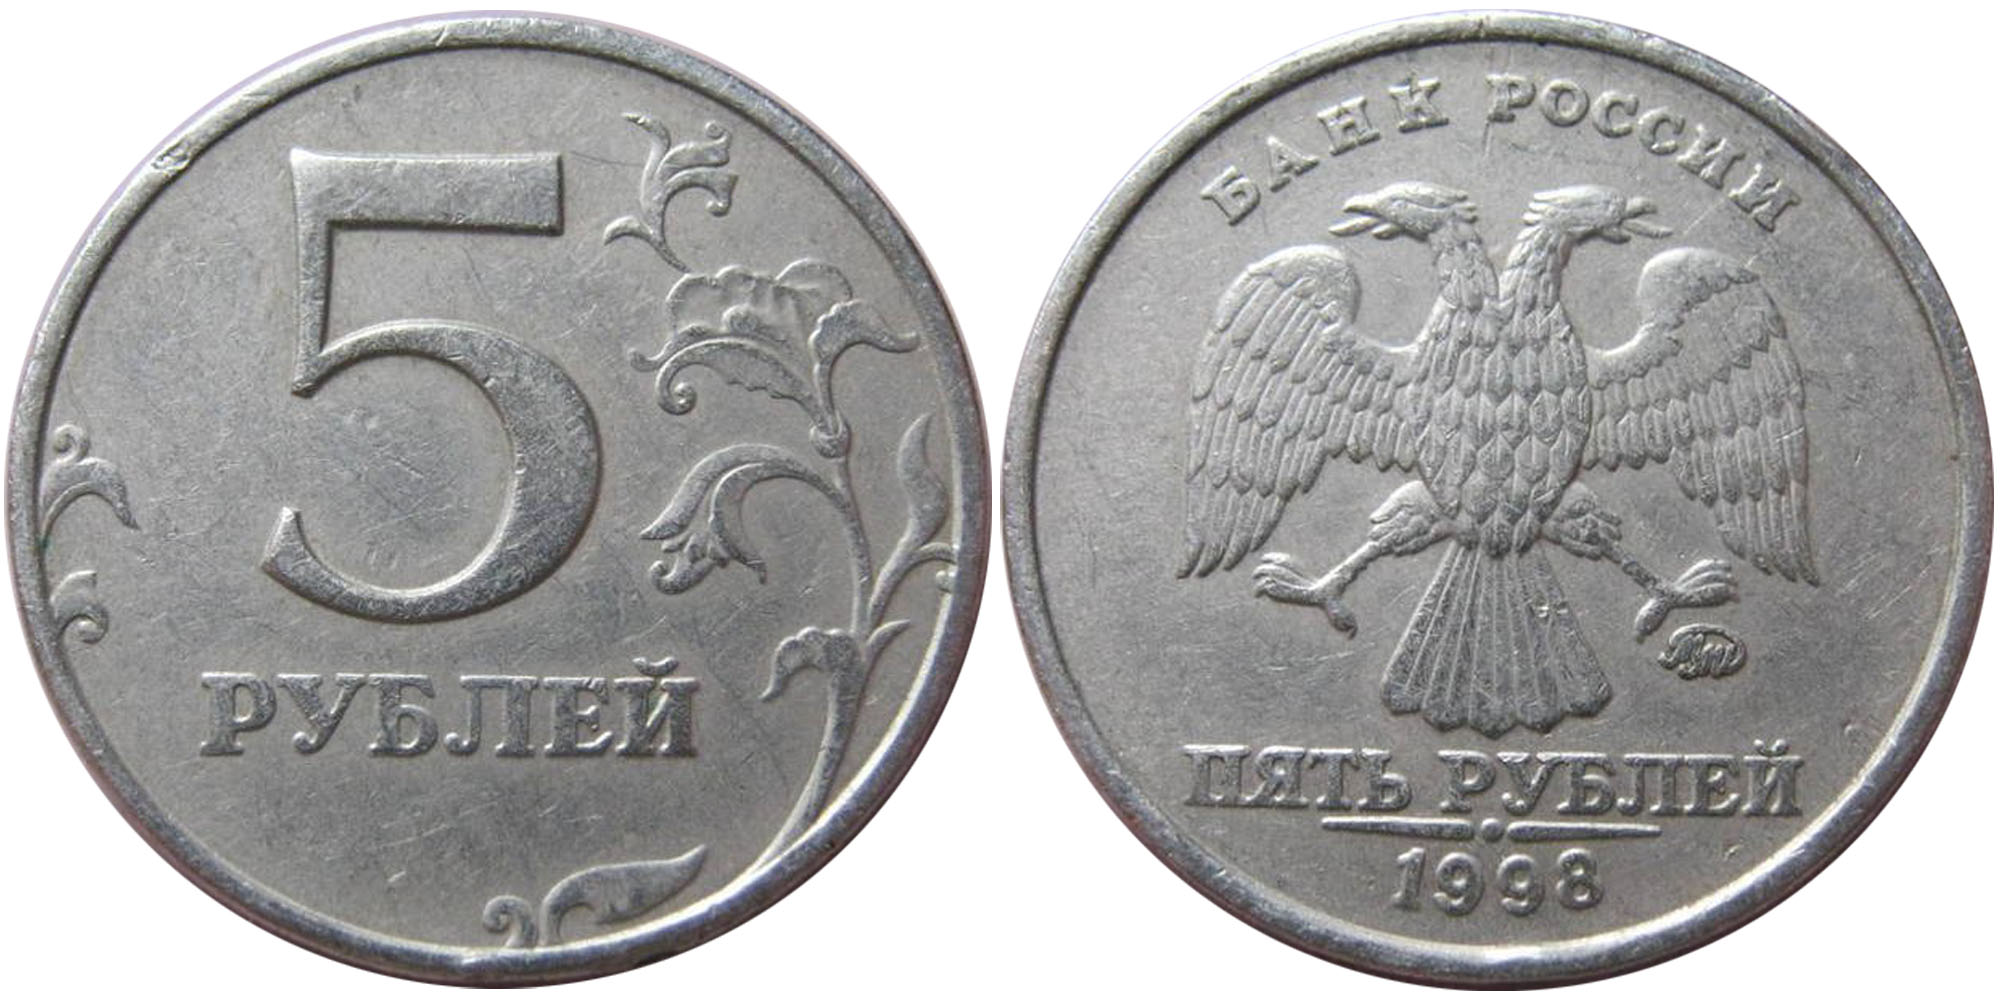 35 рублей россии. 5 Рублей 1998 ММД. Монета 5 рублей Аверс. Монета 5 рублей Аверс и реверс. 5 Рублей 98 ММД.